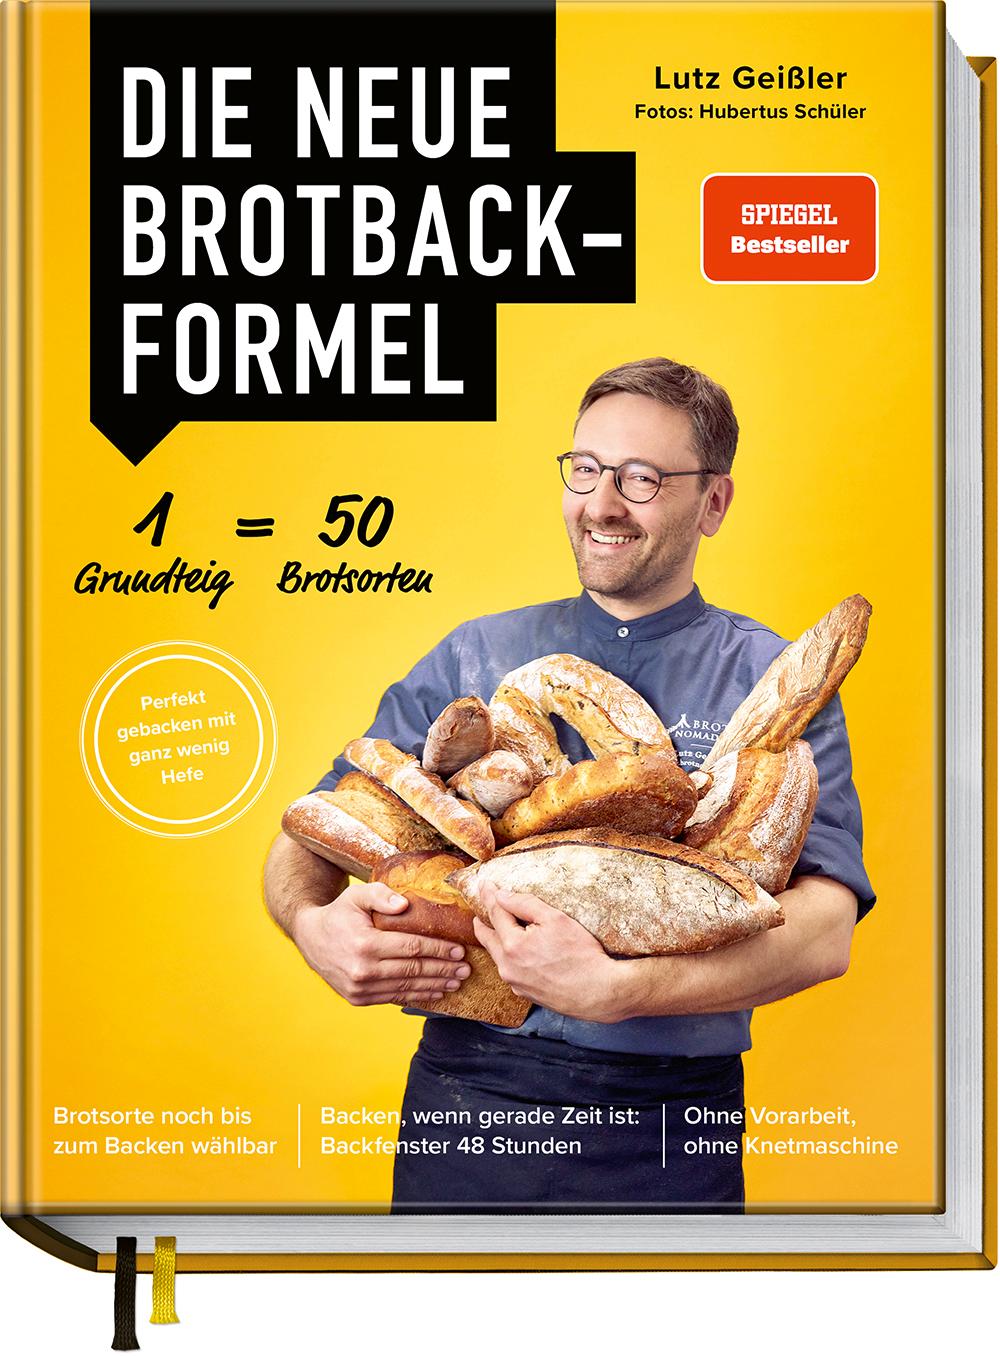 Die neue Brotbackformel - Nur mit wenig Hefe